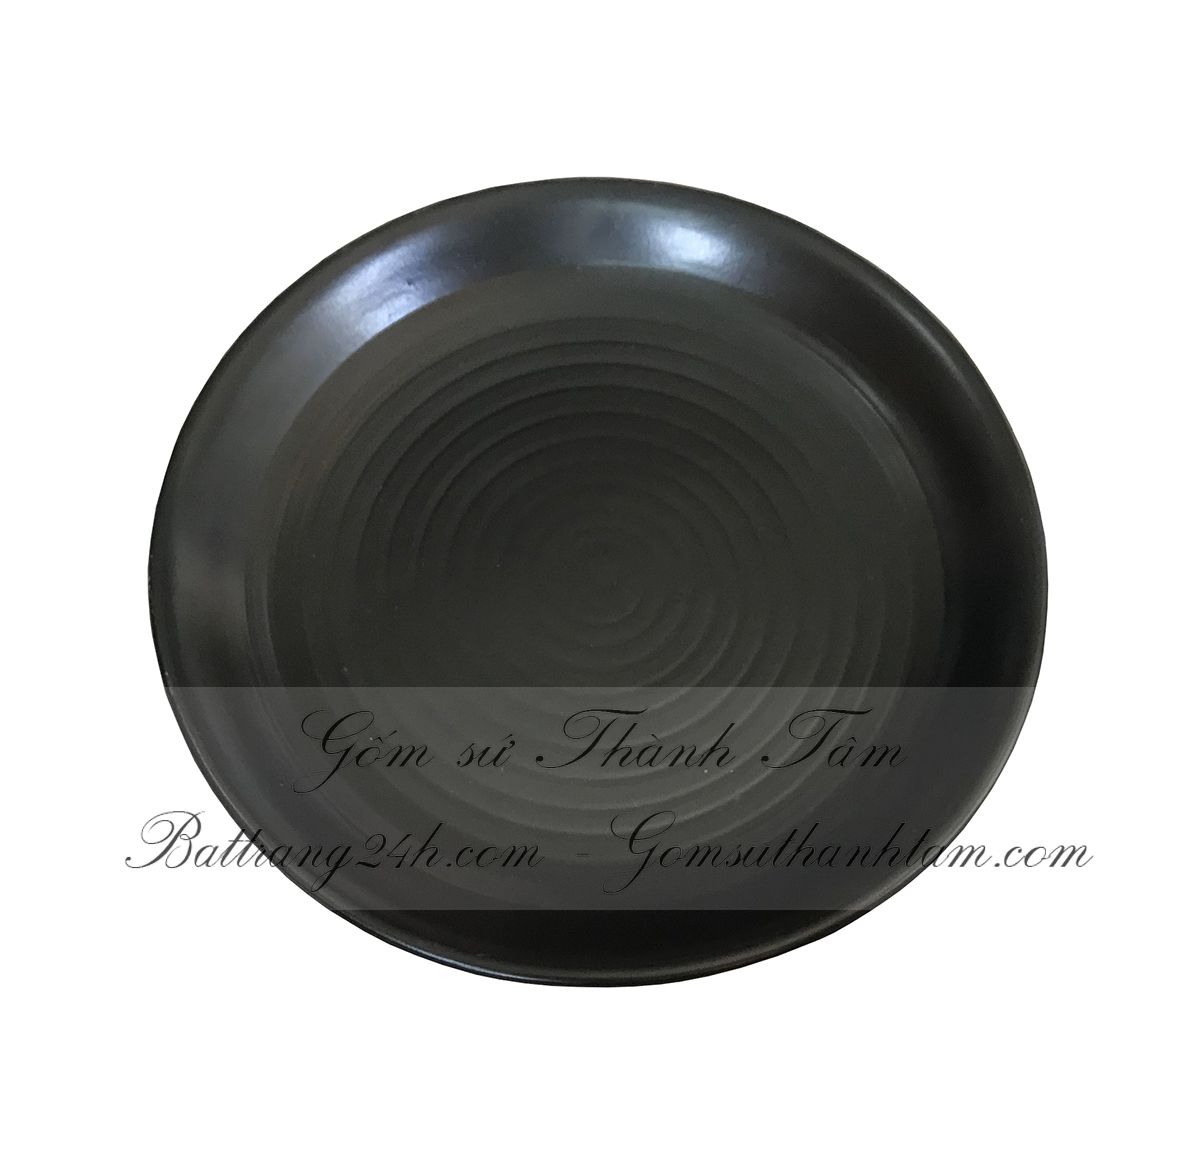 Đĩa sứ tròn bằng gốm sứ bát tràng dùng trong nhà hàng cao cấp, sang trọng